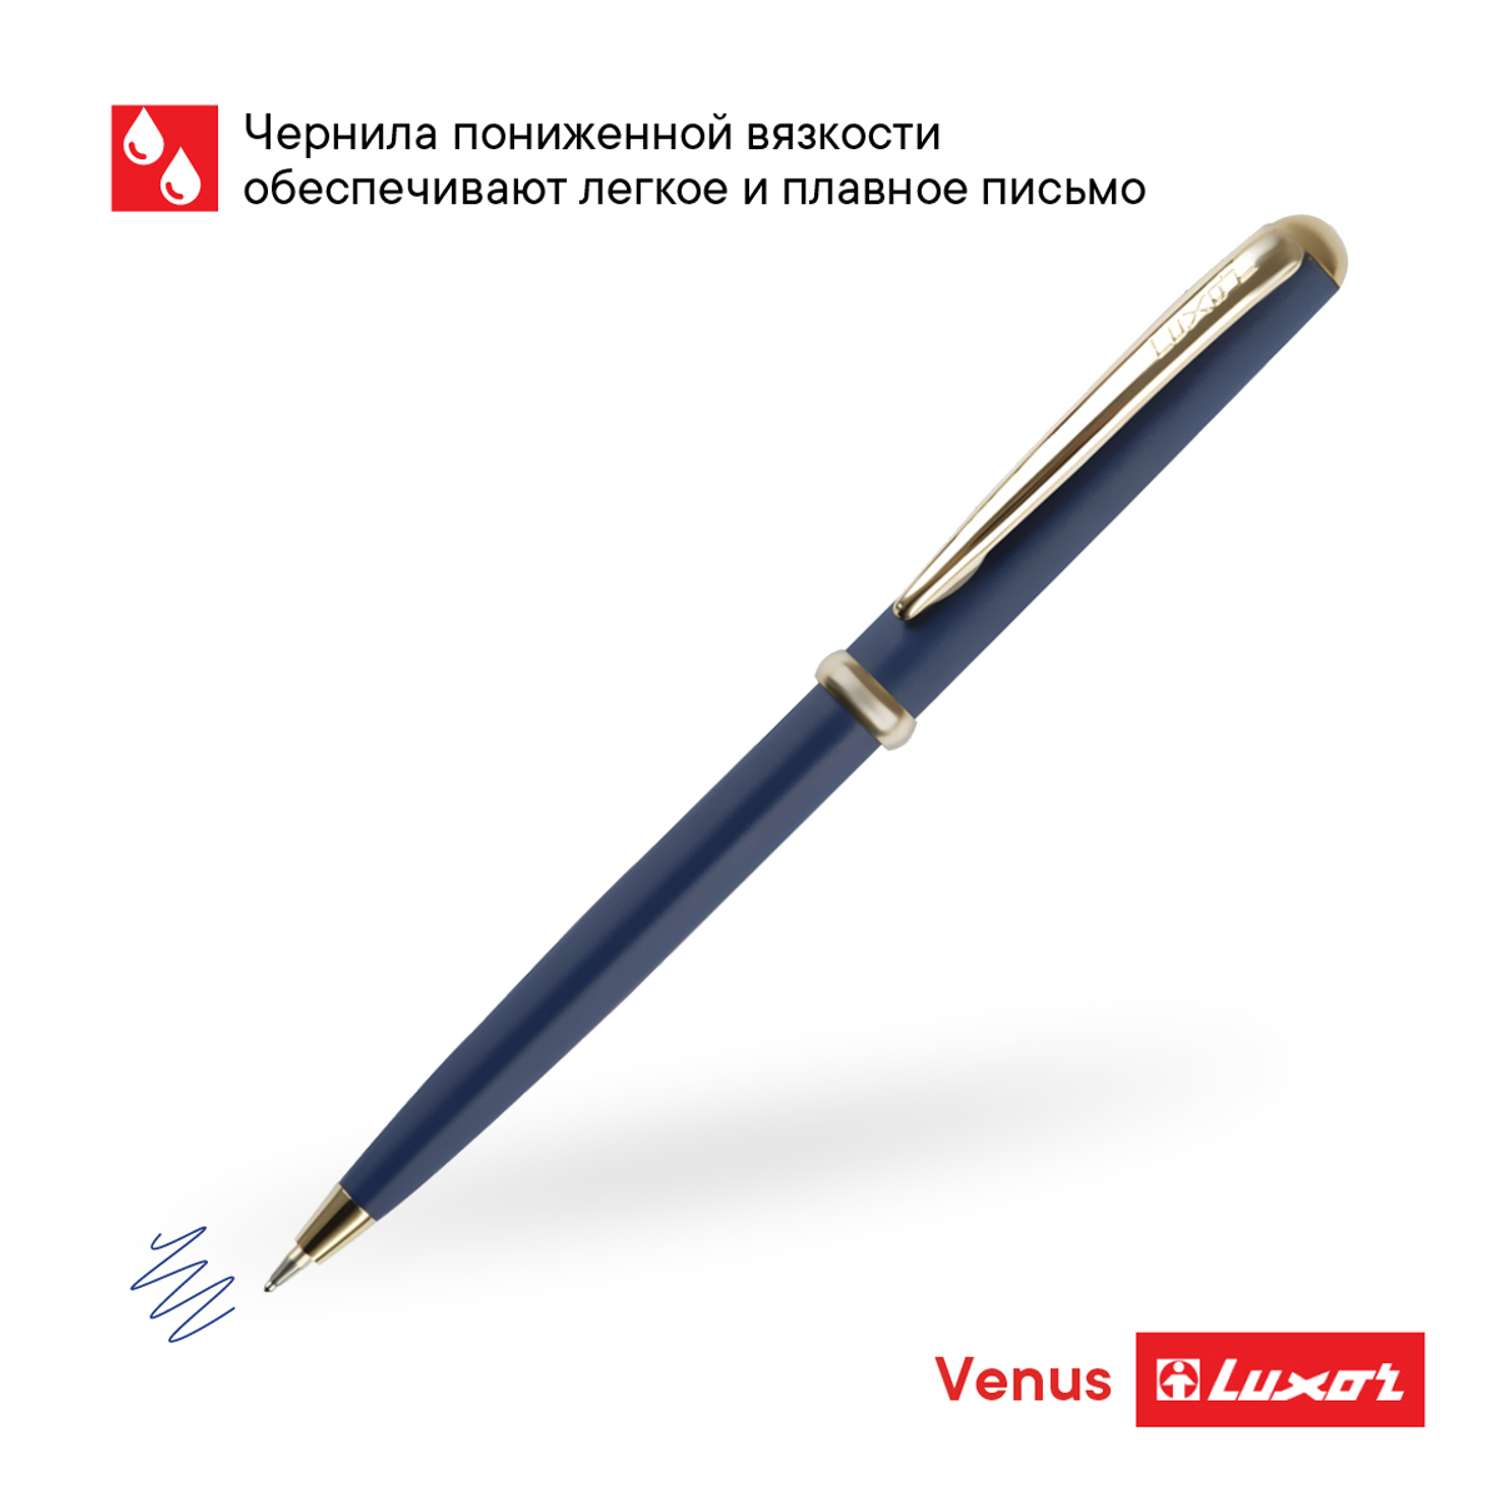 Ручка шариковая LUXOR Venus синяя корпус синий золото кнопочный механизм футляр - фото 2